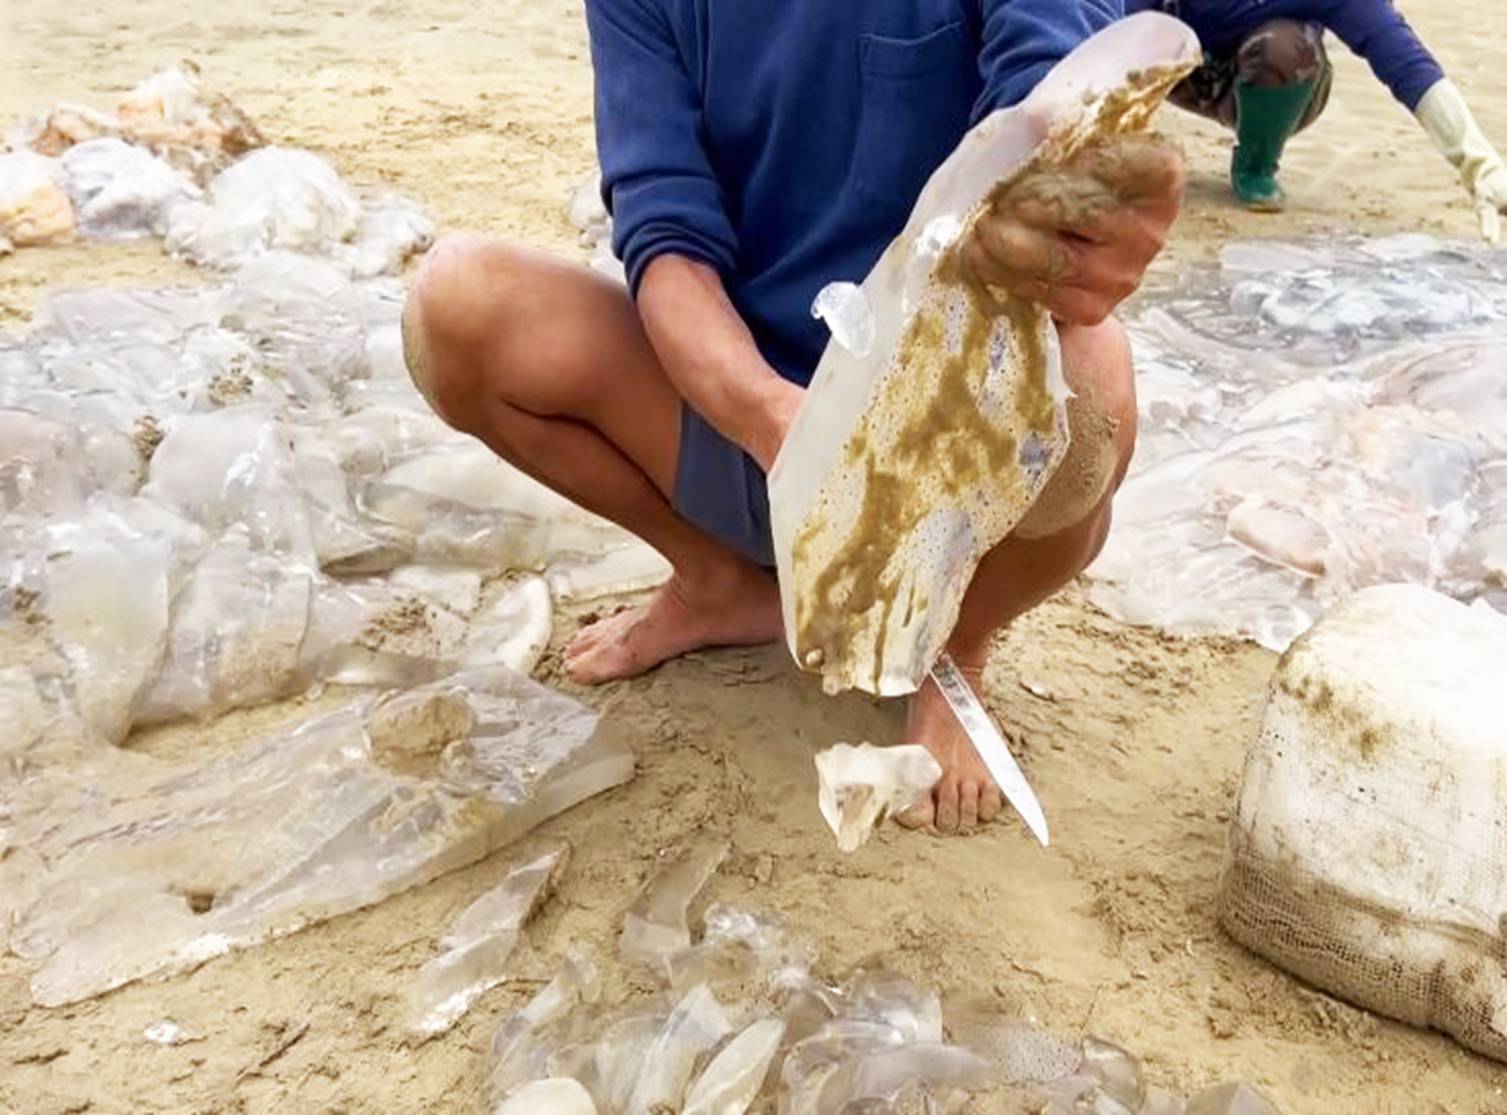 Ngư dân cắt nhỏ sứa trộn với cát biển, dân tình phẫn nộ vì mất vệ sinh, nghe giải thích mới ngỡ ngàng-6